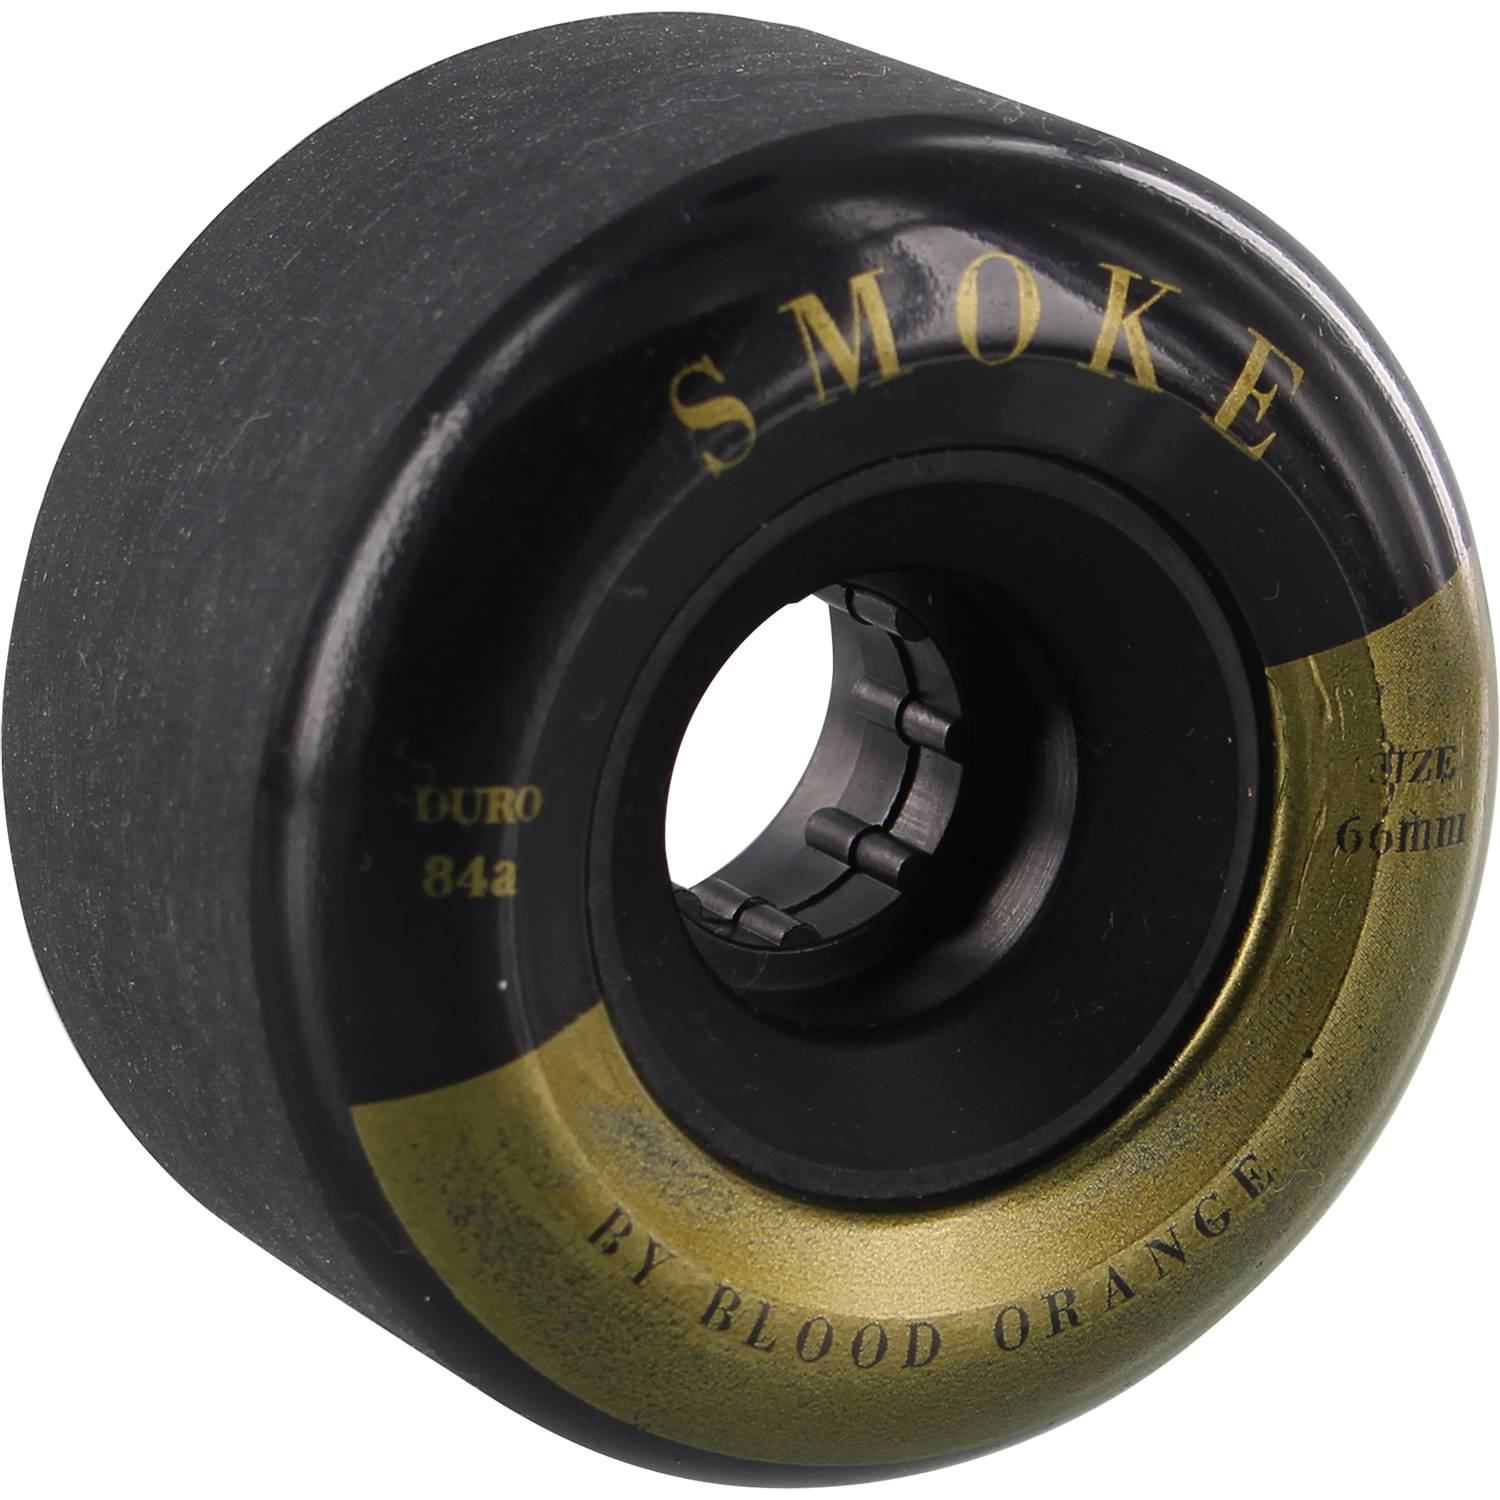 Blood Orange Smoke 66mm 84a Black/Gold Longboard Wheels (Set of 4)